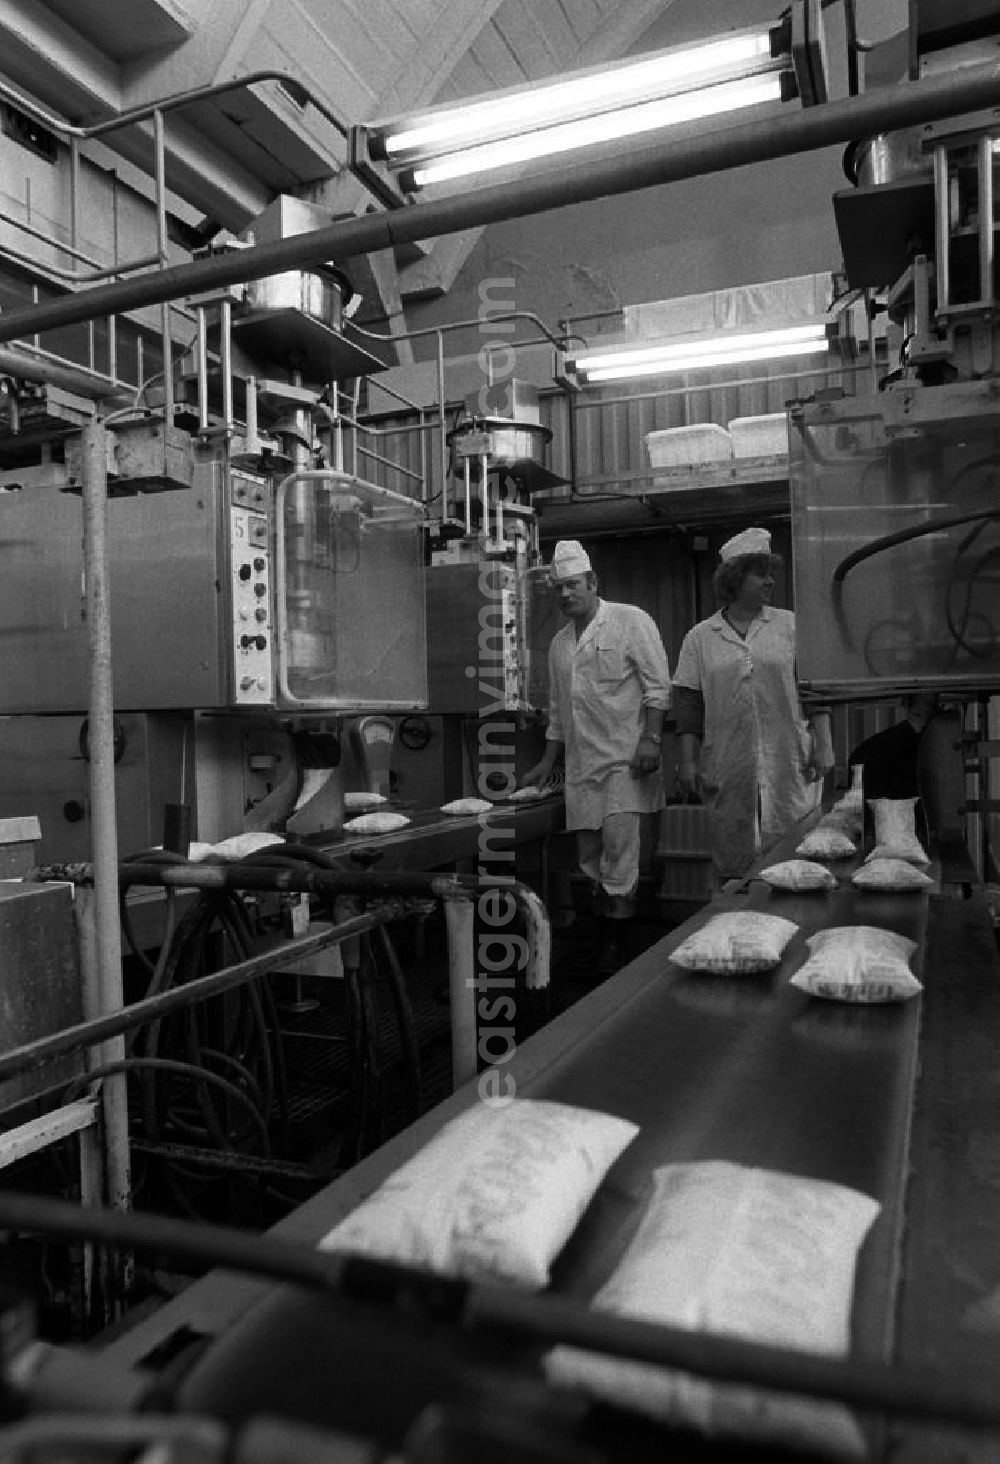 GDR picture archive: Berlin - In Plastiktüten verpackte Vollmilch wird in einem Milchhof über Fließbänder weitergeleitet. Zwei Arbeiter stehen neben dem Fließband.